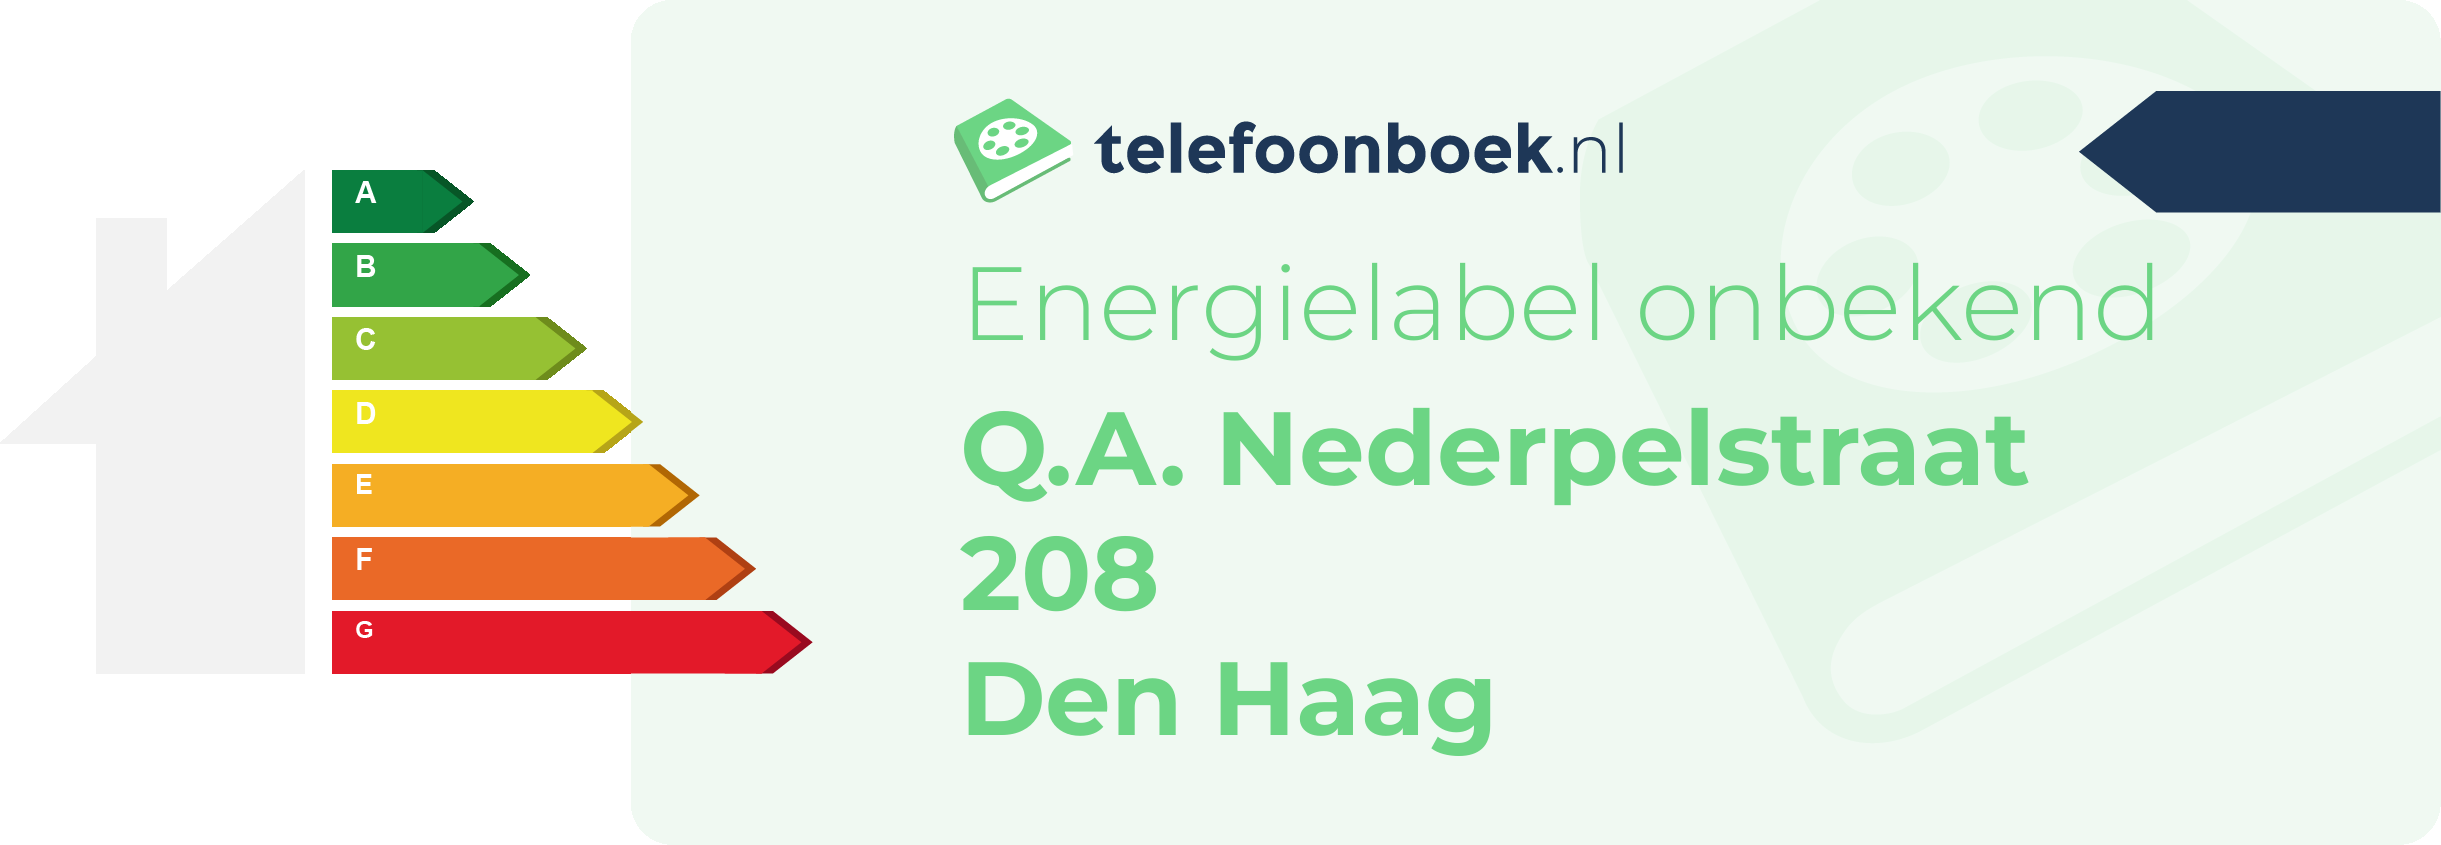 Energielabel Q.A. Nederpelstraat 208 Den Haag